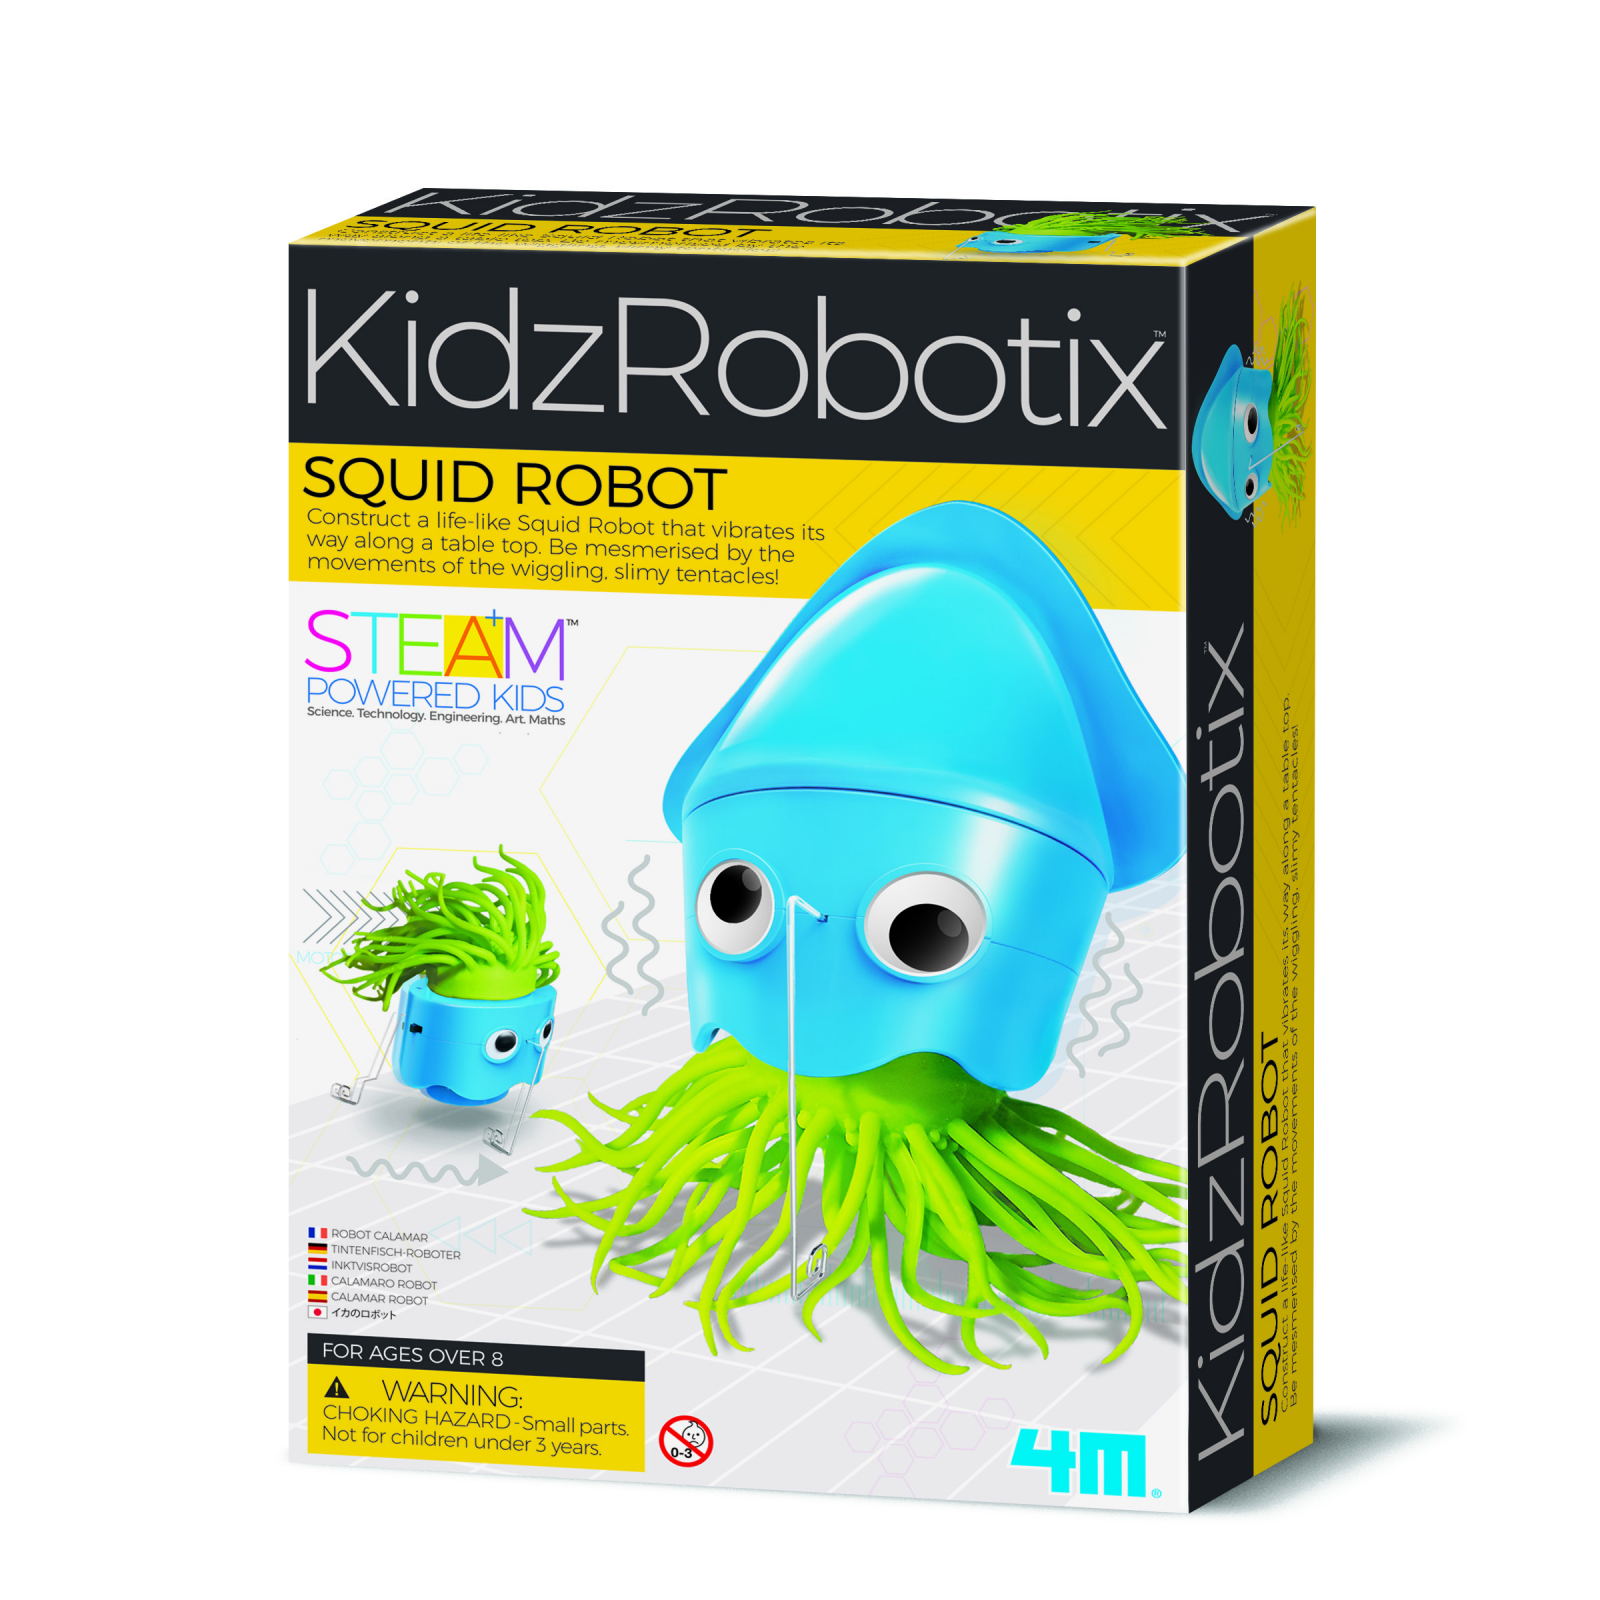 Kit constructie robot - squid robot, kidz robotix image0